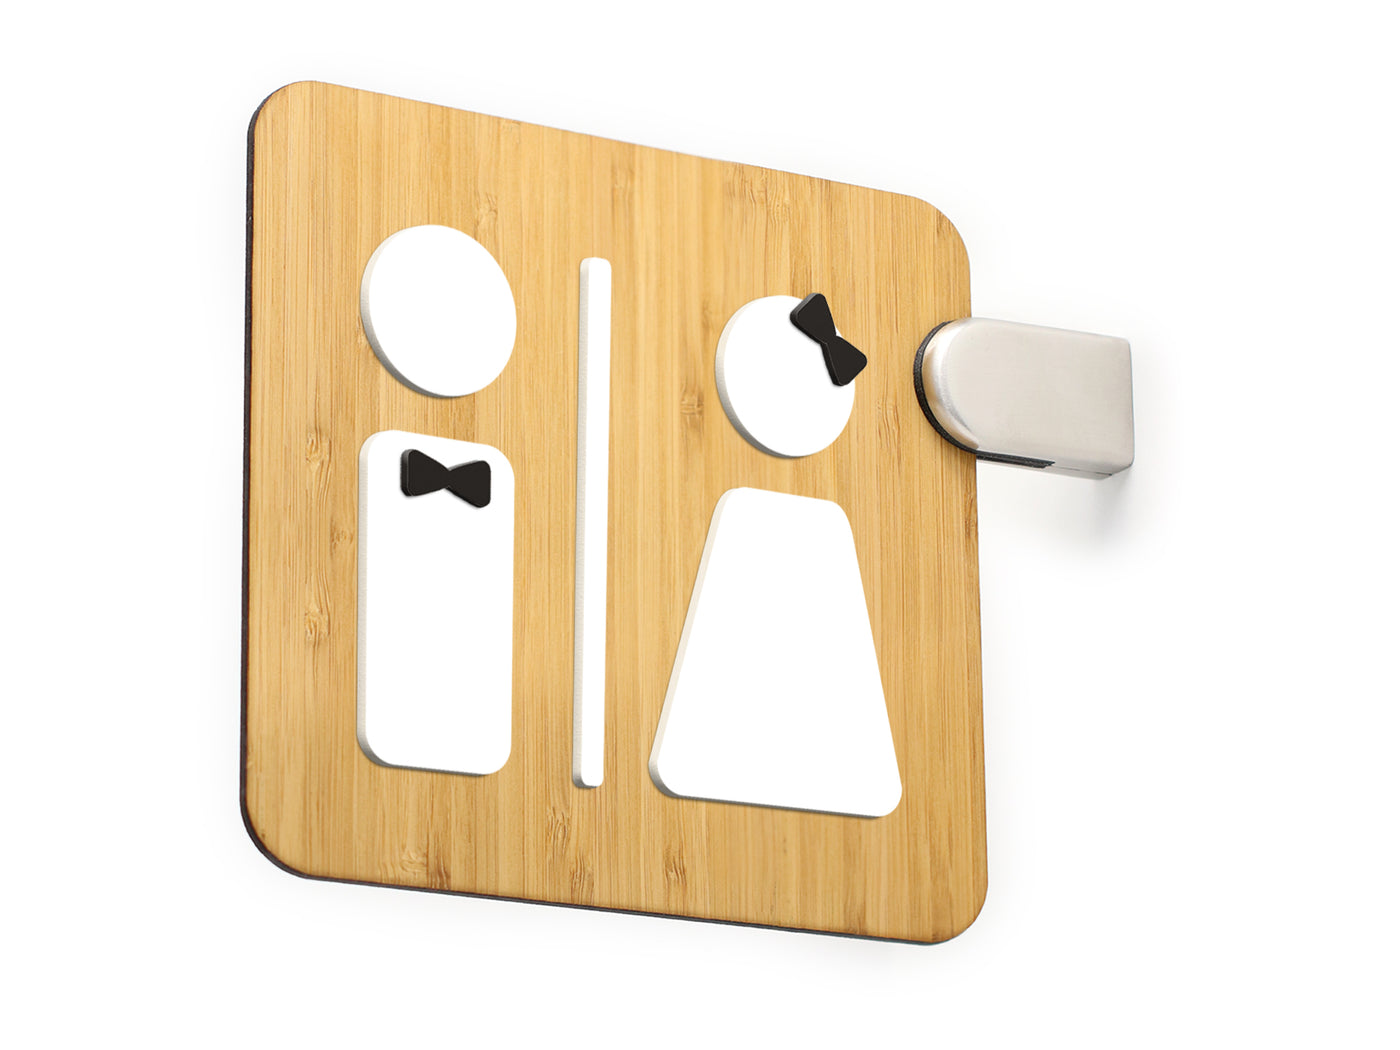 Styled knot - Cartello a bandiera toilettes, perpendicolare a doppia faccia - Simboli a scelta